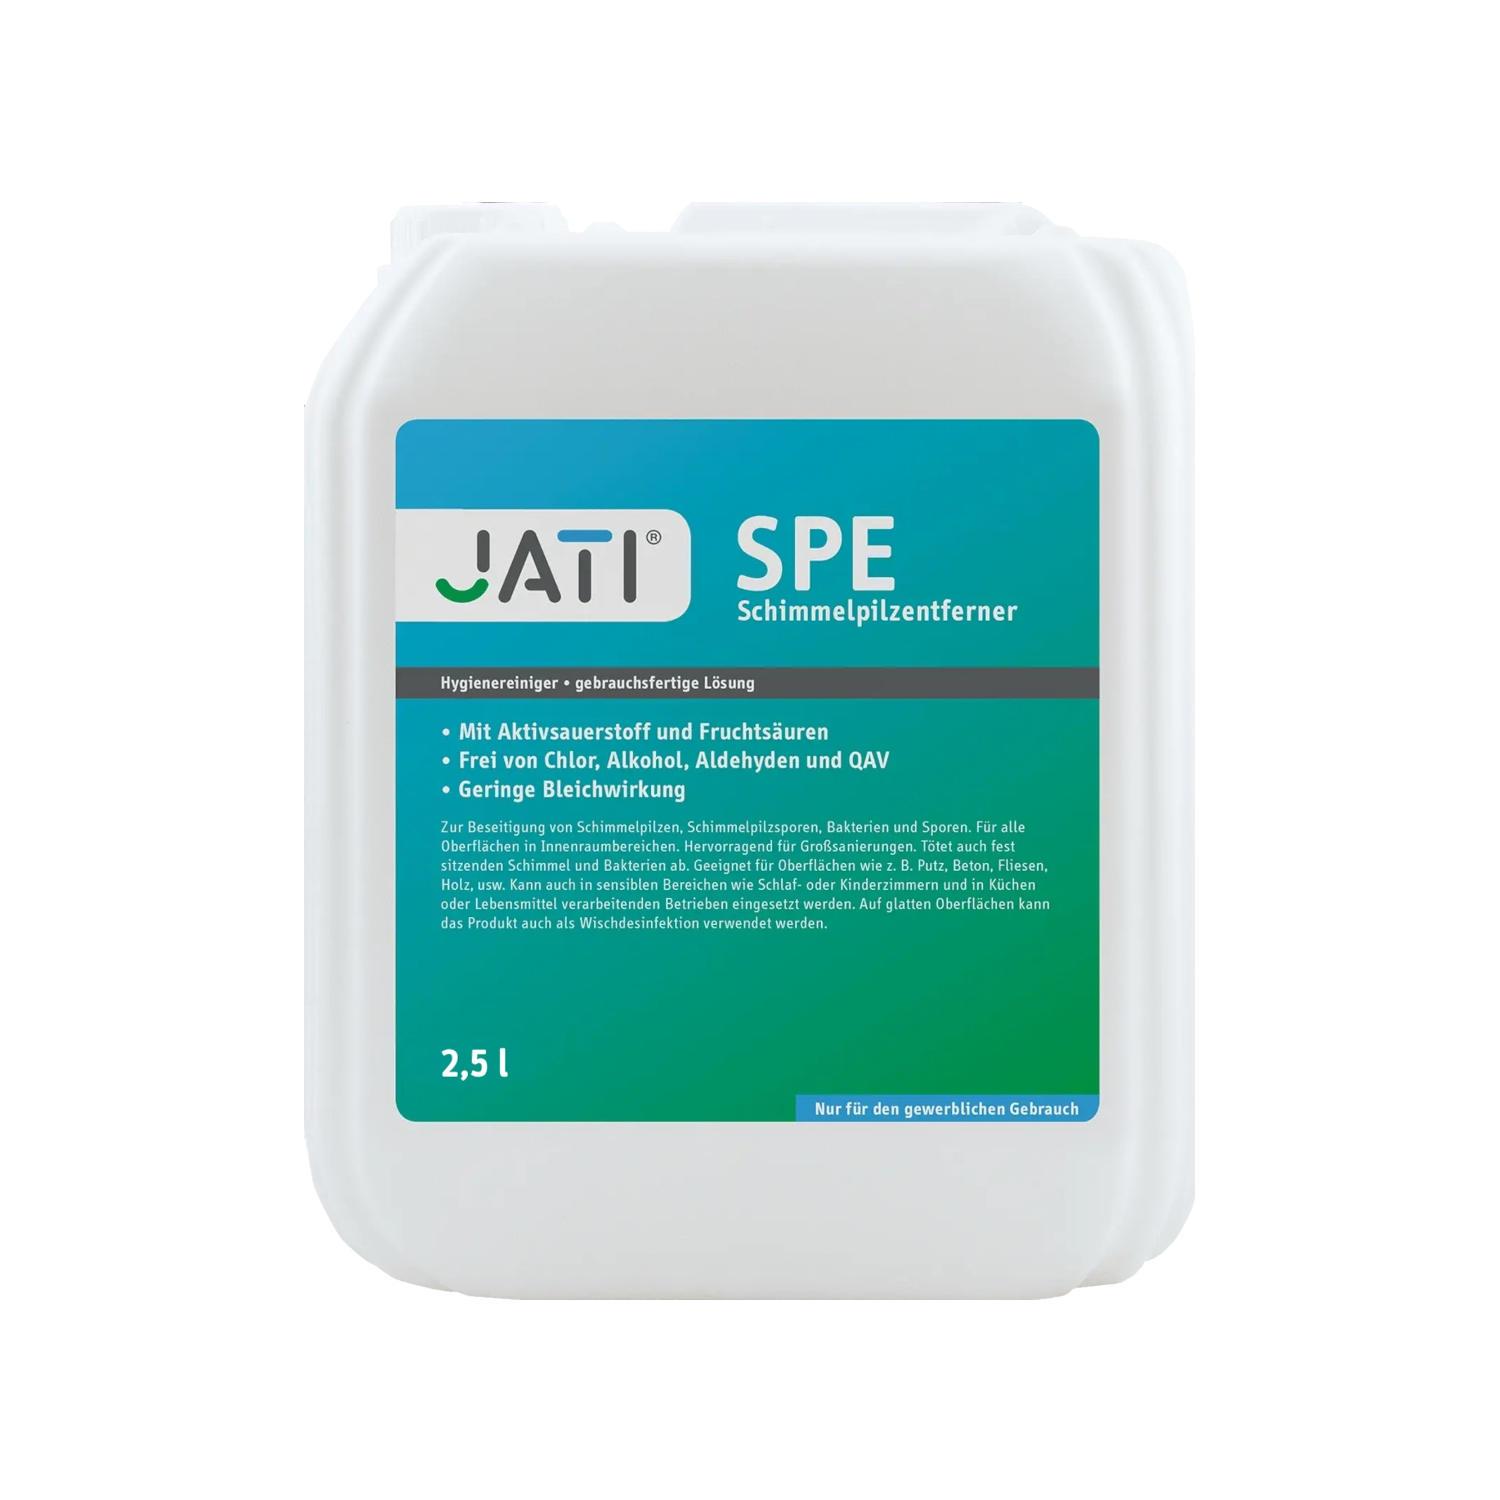 JATI SPE Schimmelpilzentferner 2,5 Liter Kanister